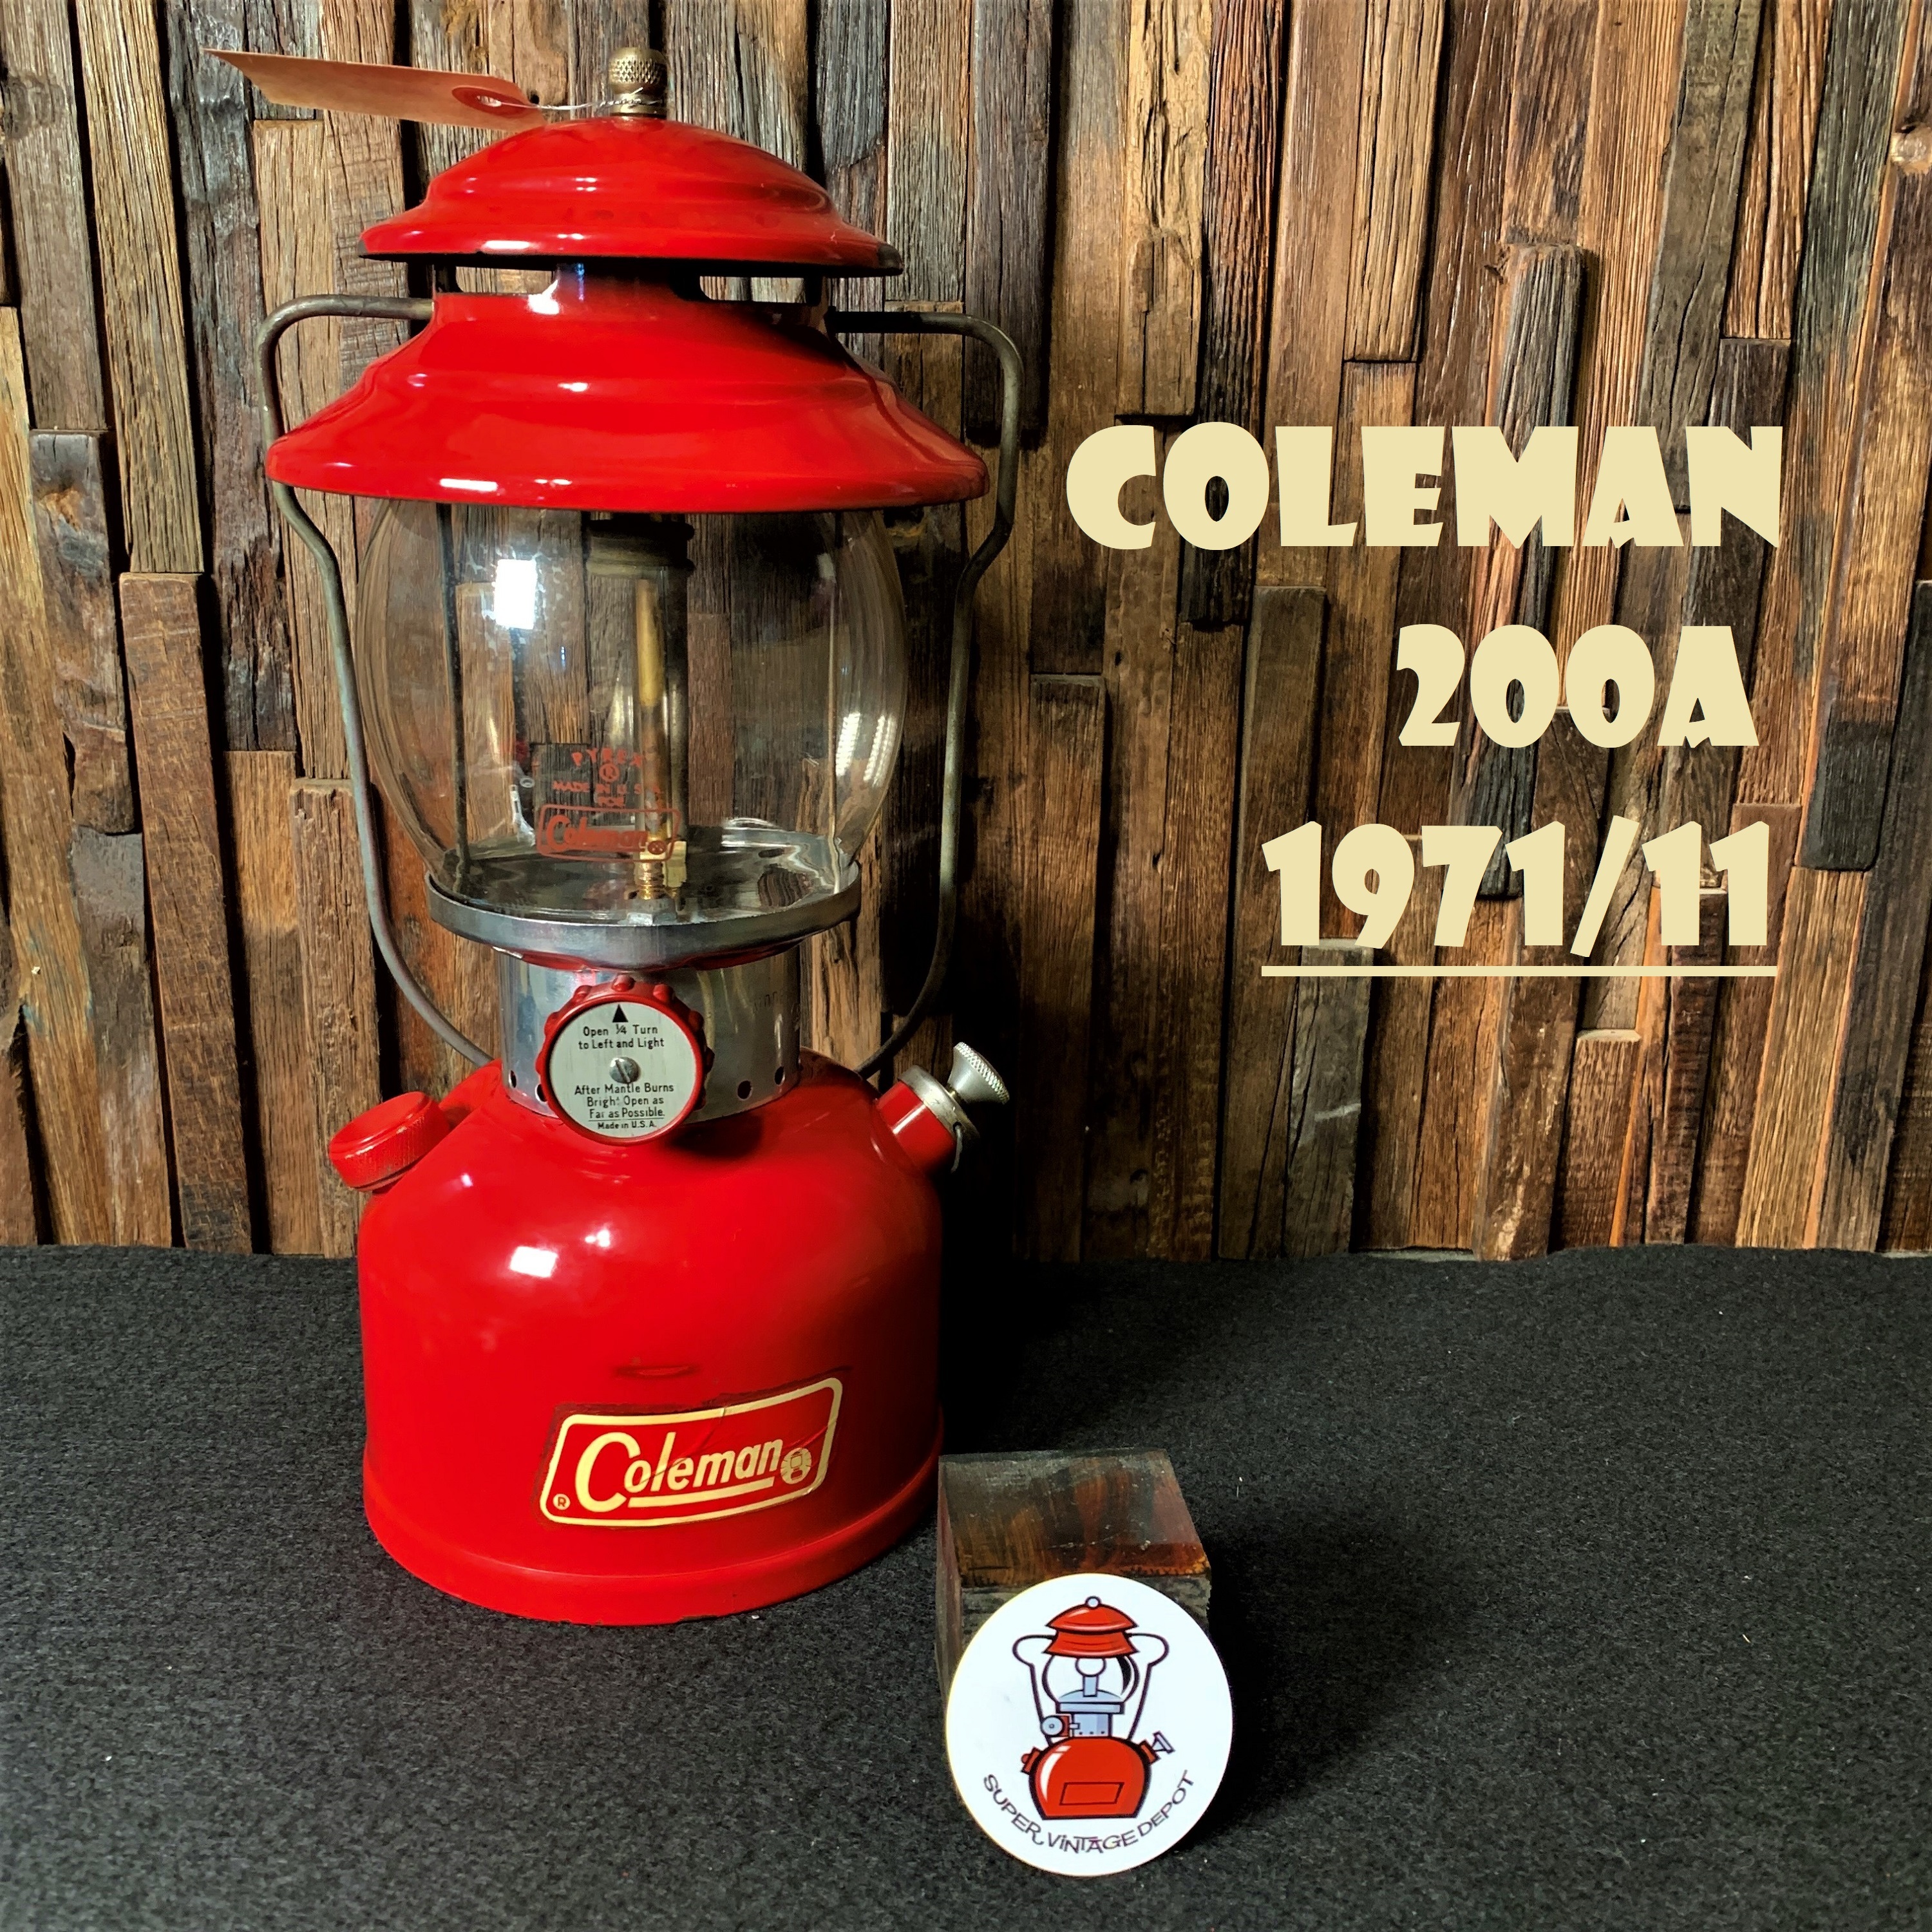 ☆燃焼良好☆ Coleman コールマンランタン 200A 1964年 5月 - arkhoediciones.com